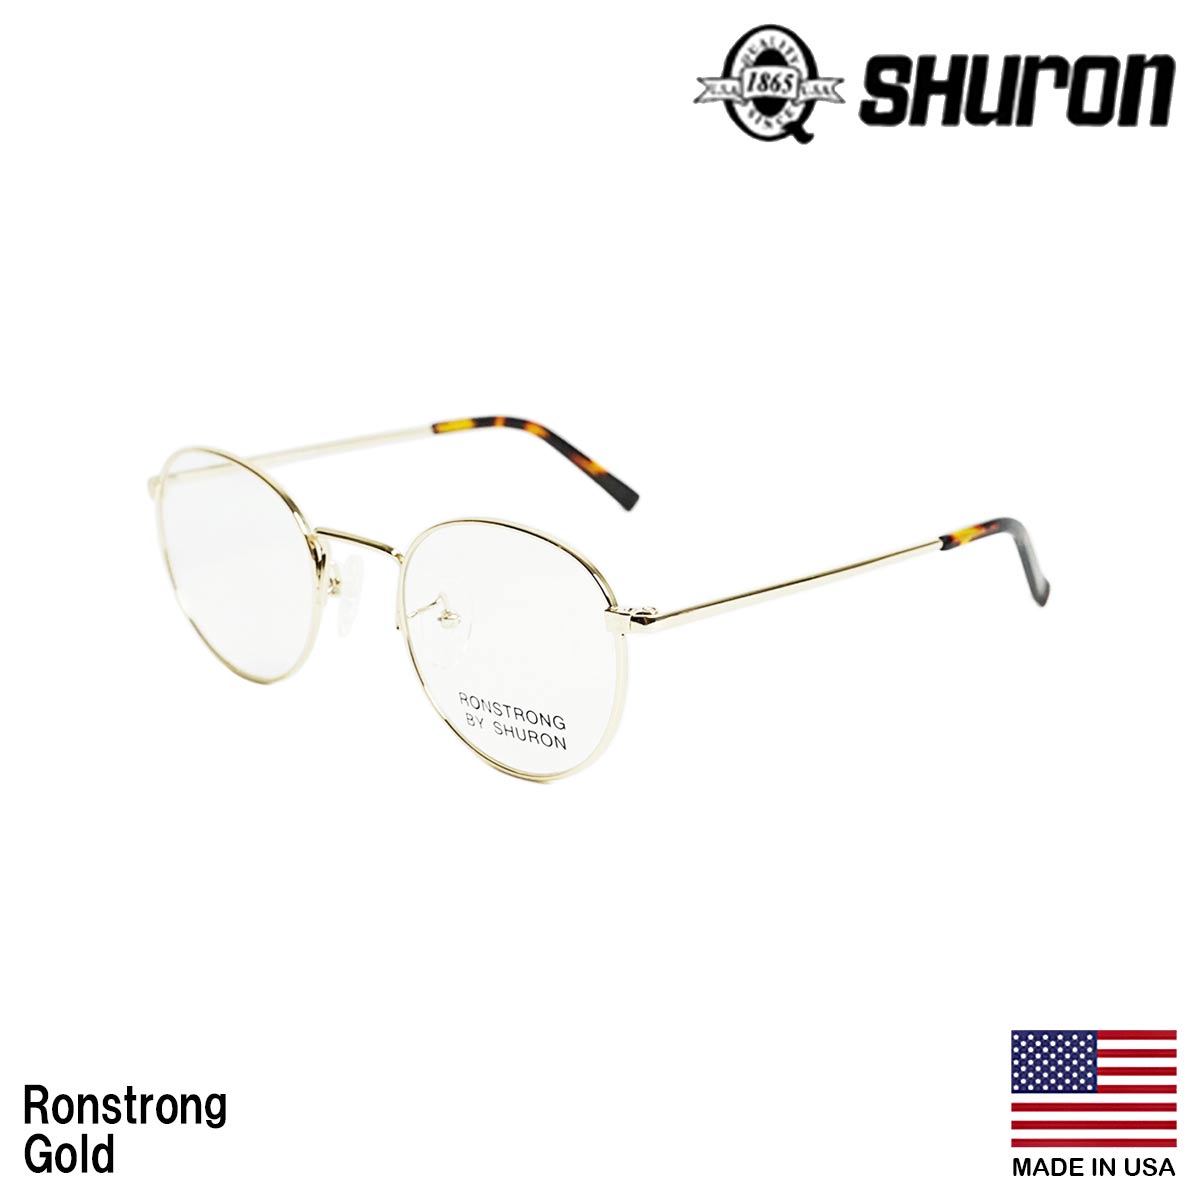 シュロン SHURON メガネ フレーム ロンストロング 眼鏡 アメリカ製 米国製 ボストン メタルフレーム ゴールド シルバー